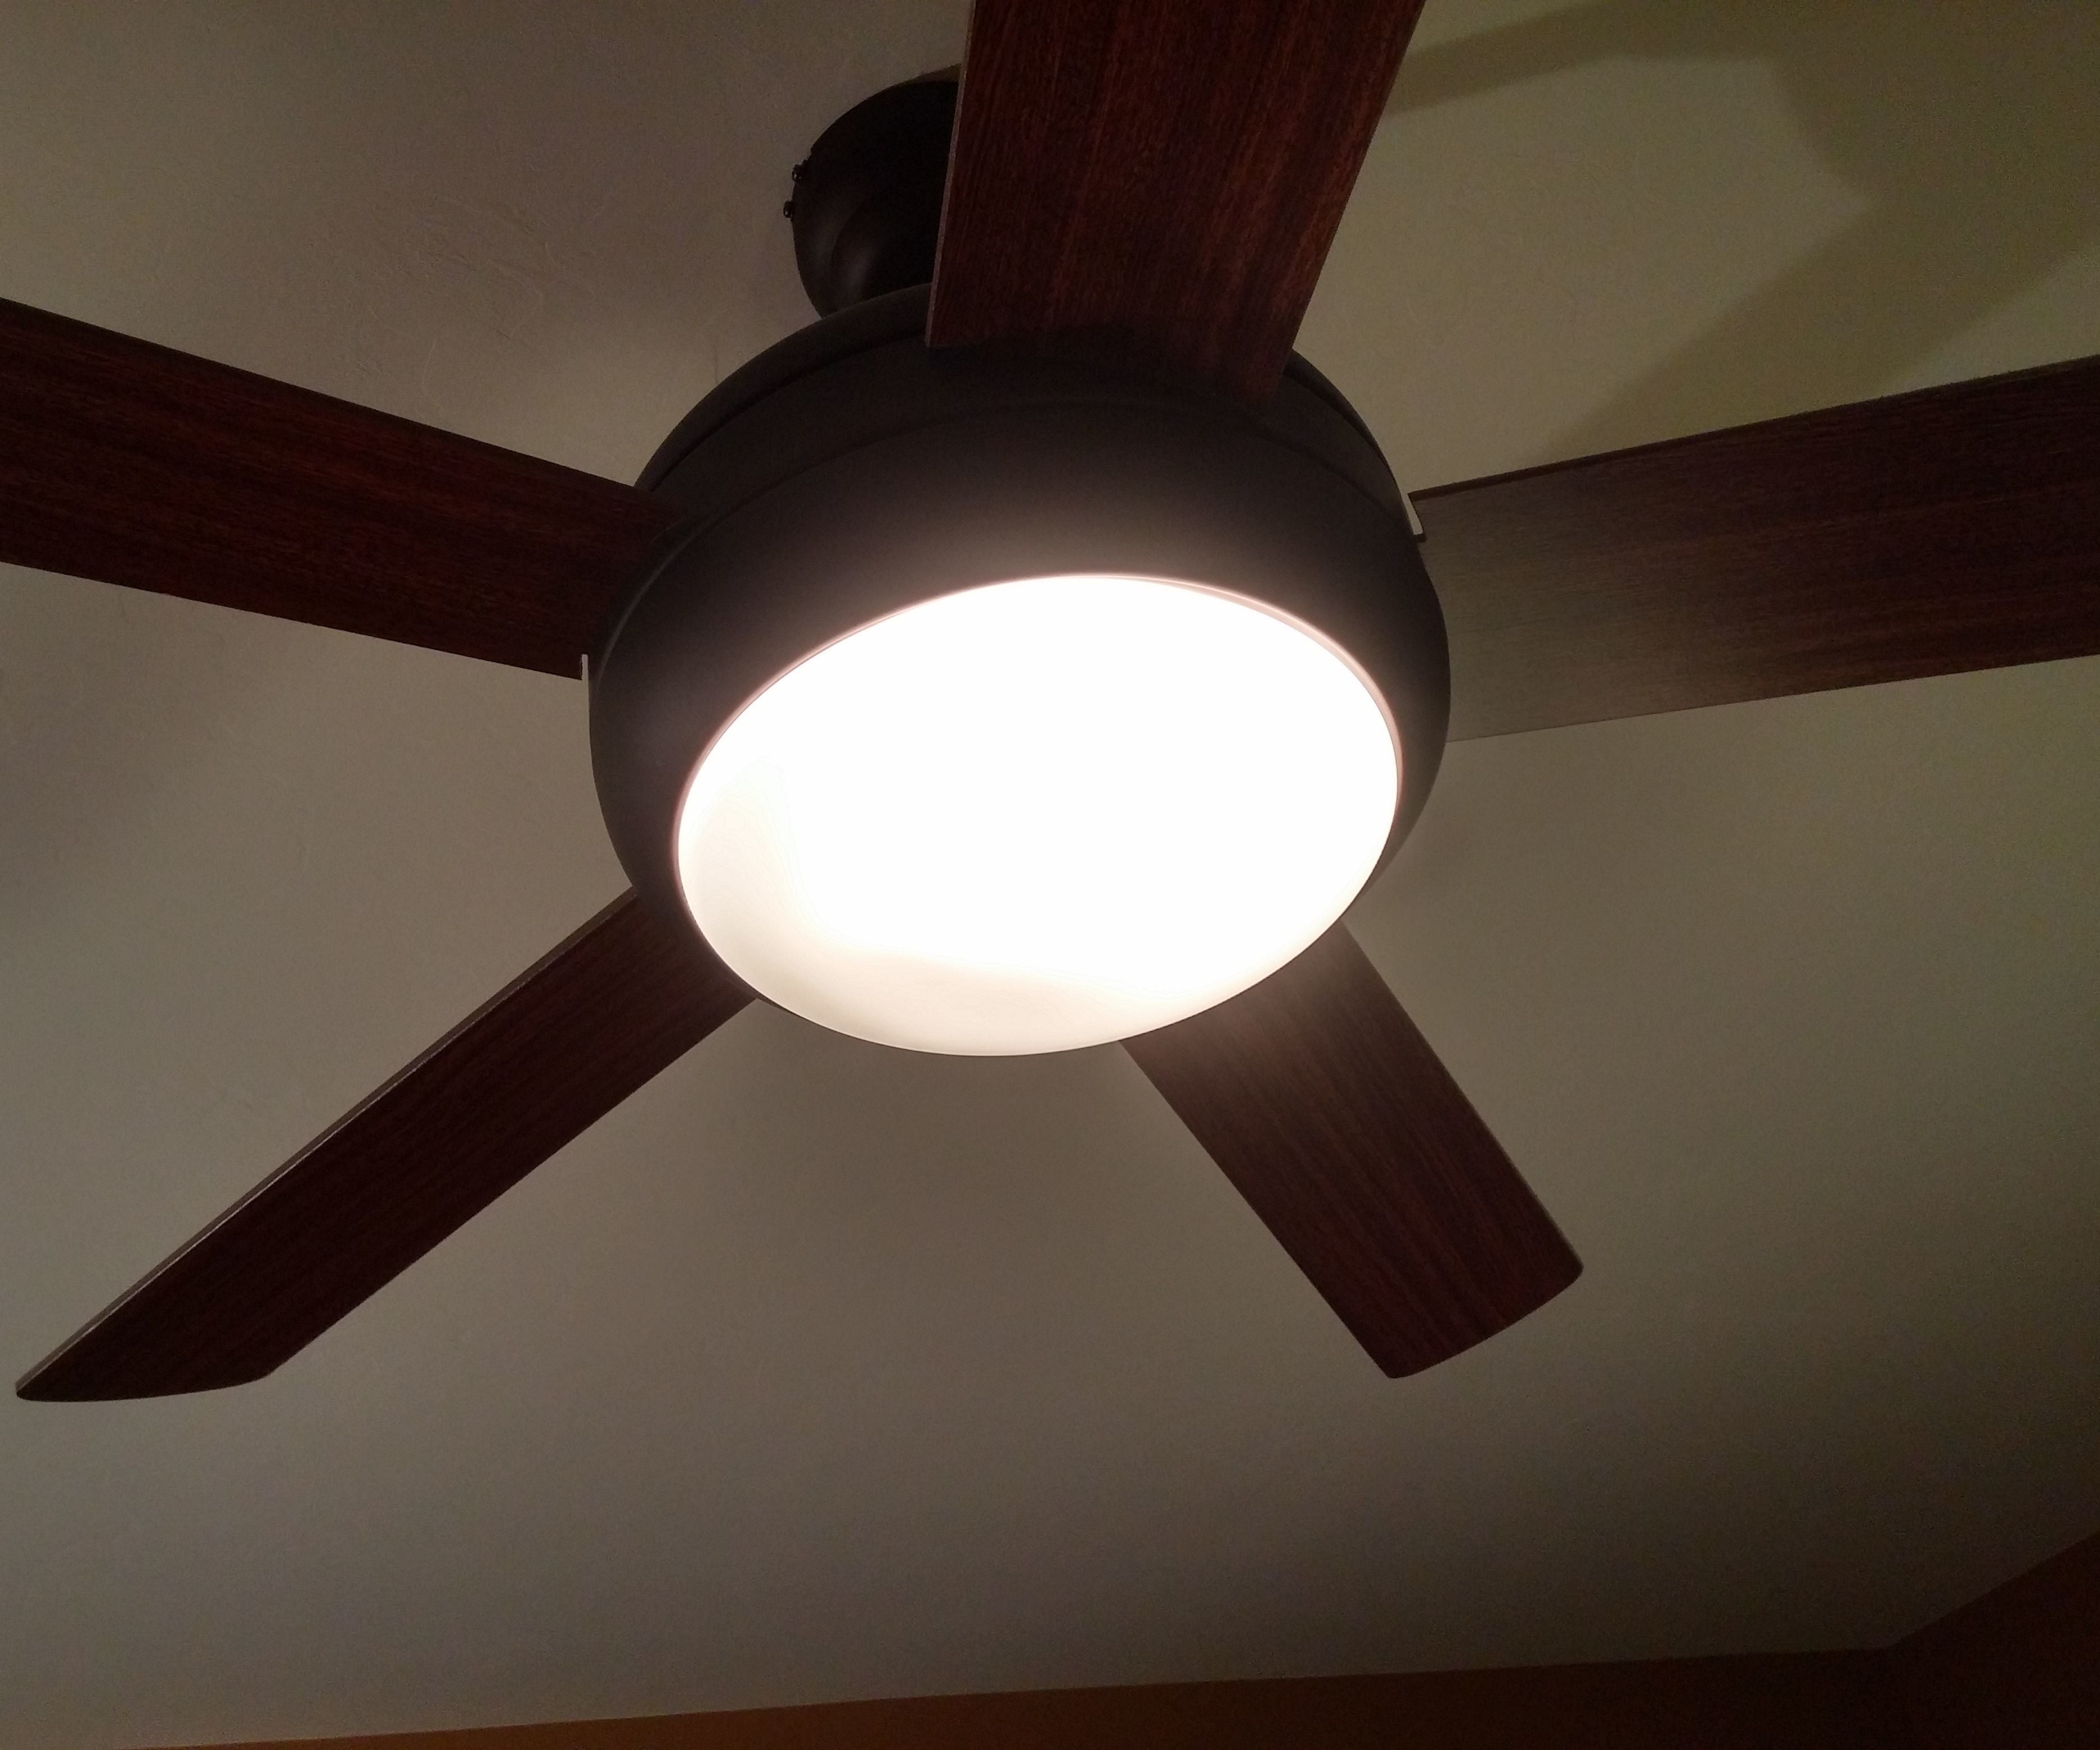 Why Do My Ceiling Fan Lights Flicker